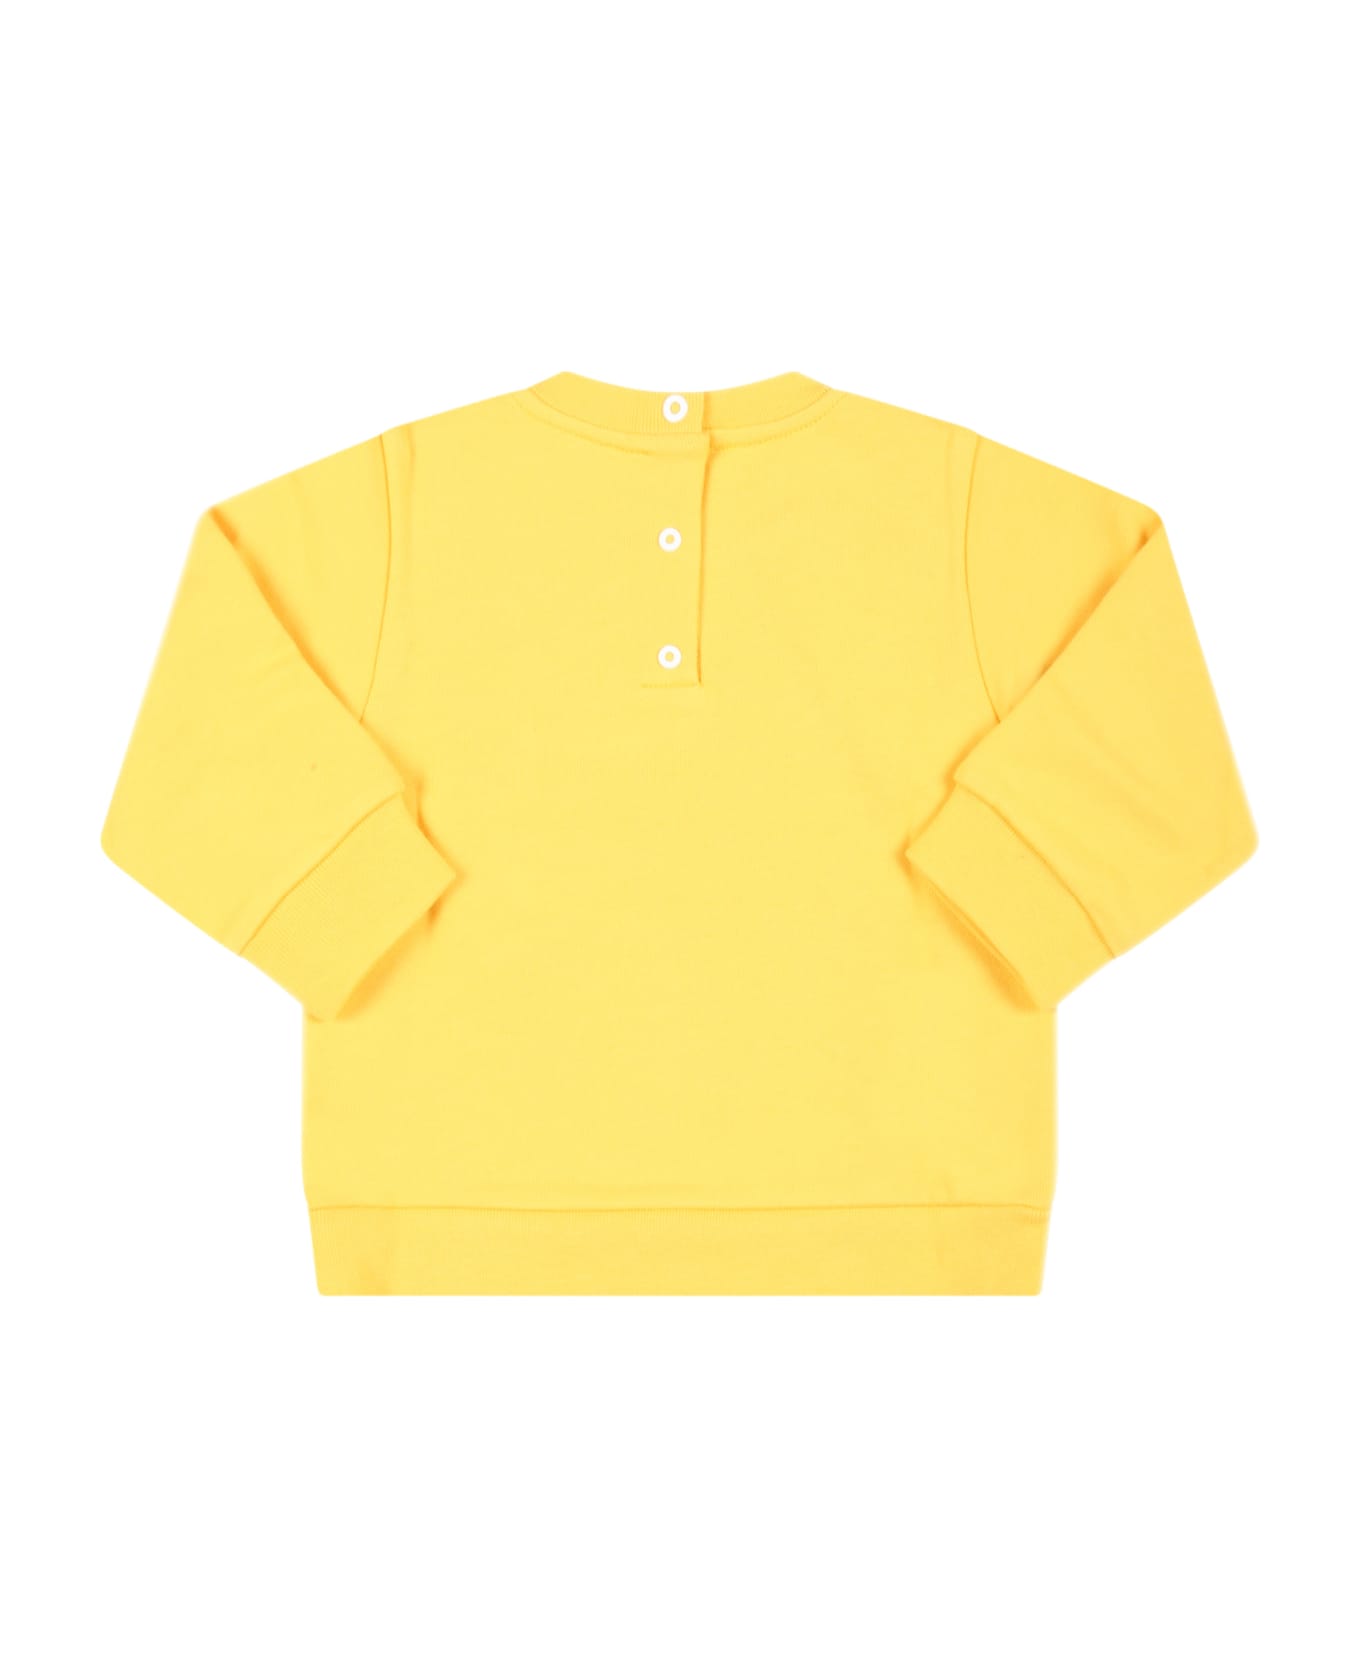 Fendi Yellow Sweatshirt For Babykids With White Logo - Yellow